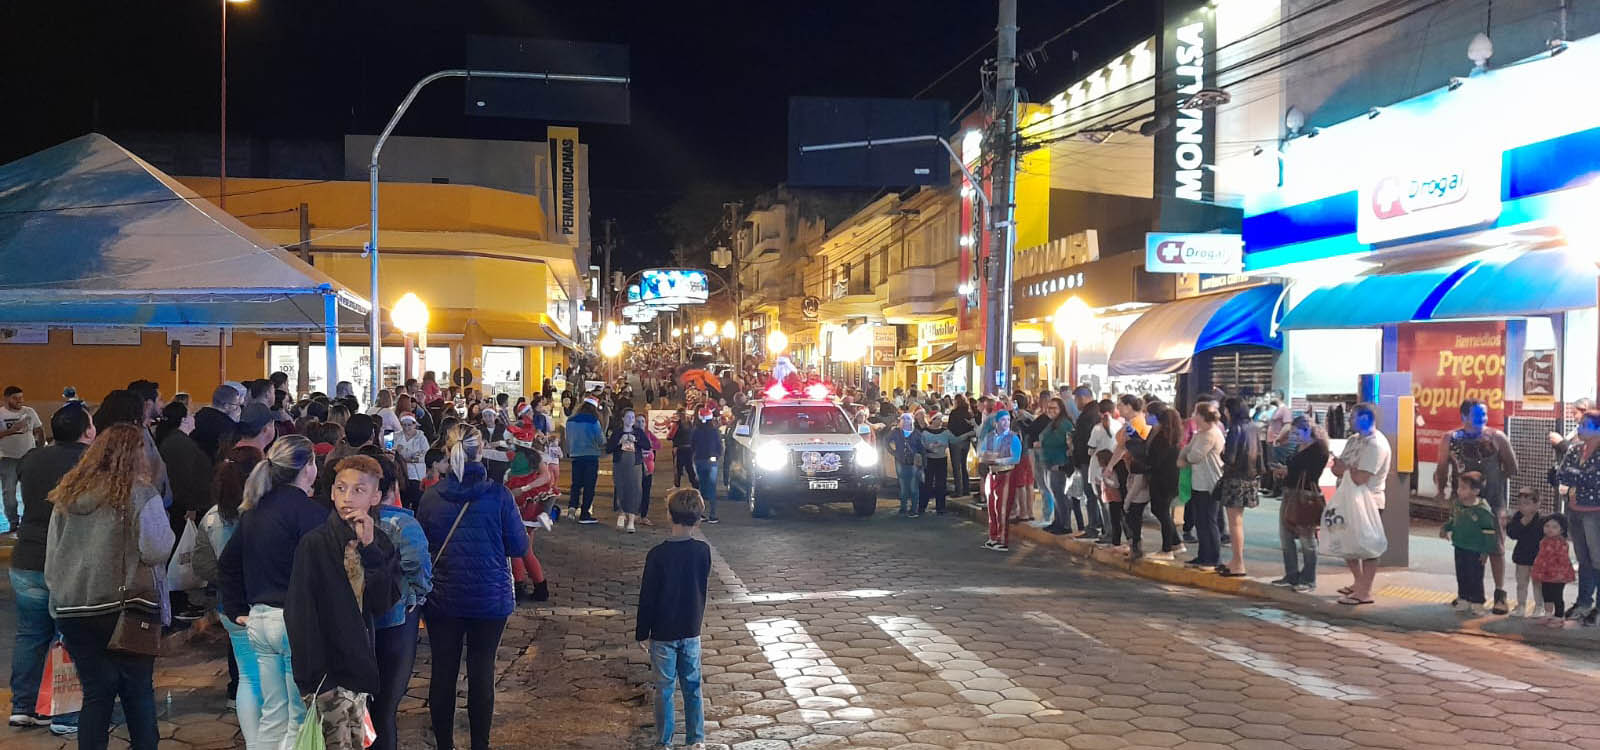 Após a chegada de tirolesa do Papai Noel, Doutorlhaços e Banda da Polícia Civil alegram noite avareense - sudoestepaulista